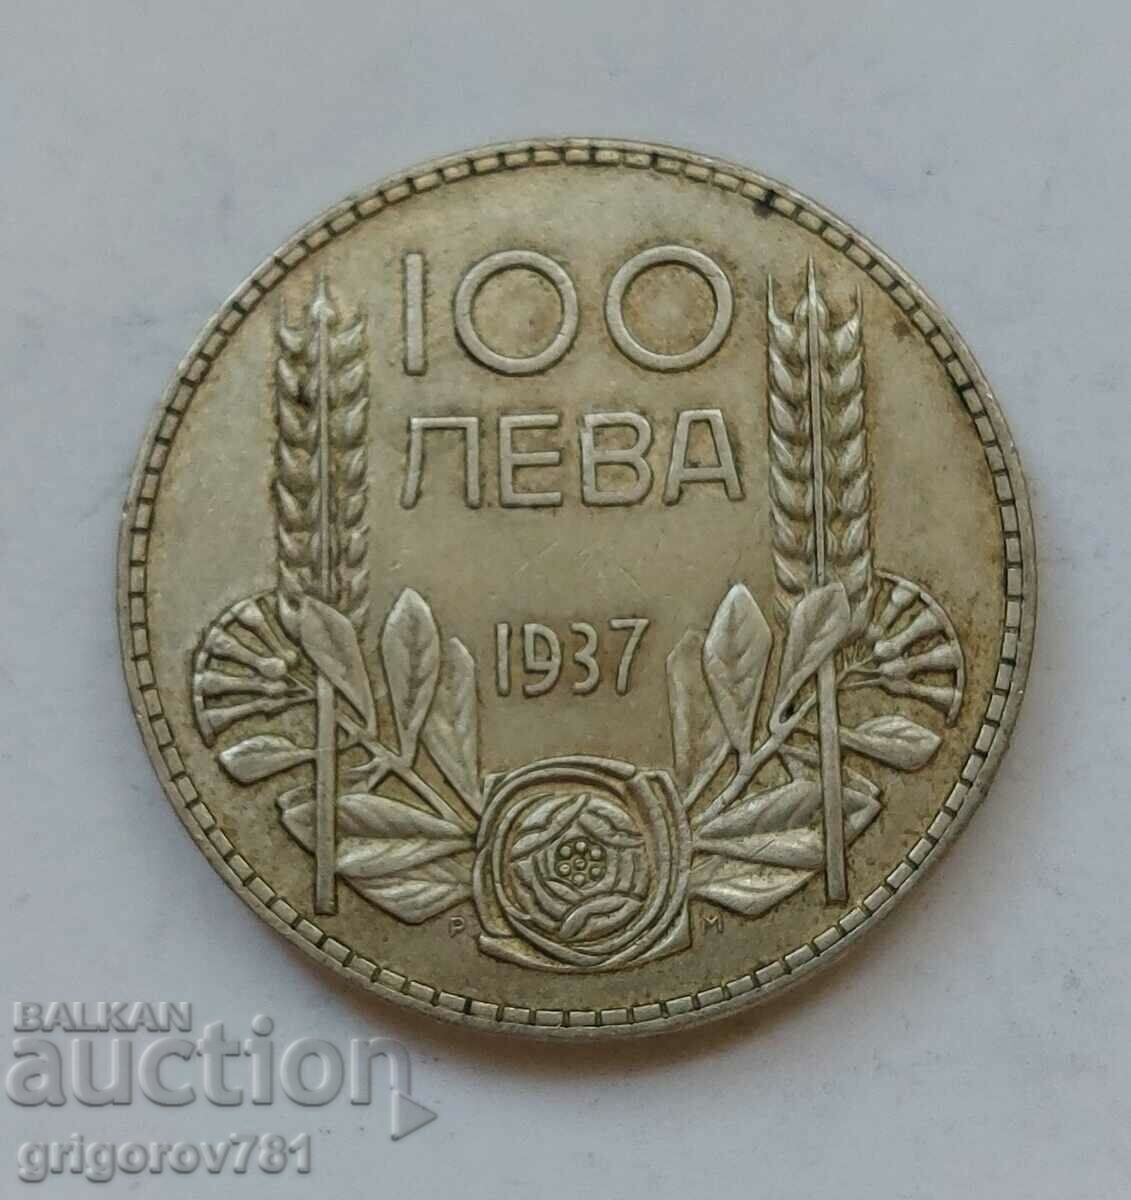 100 leva argint Bulgaria 1937 - monedă de argint #142